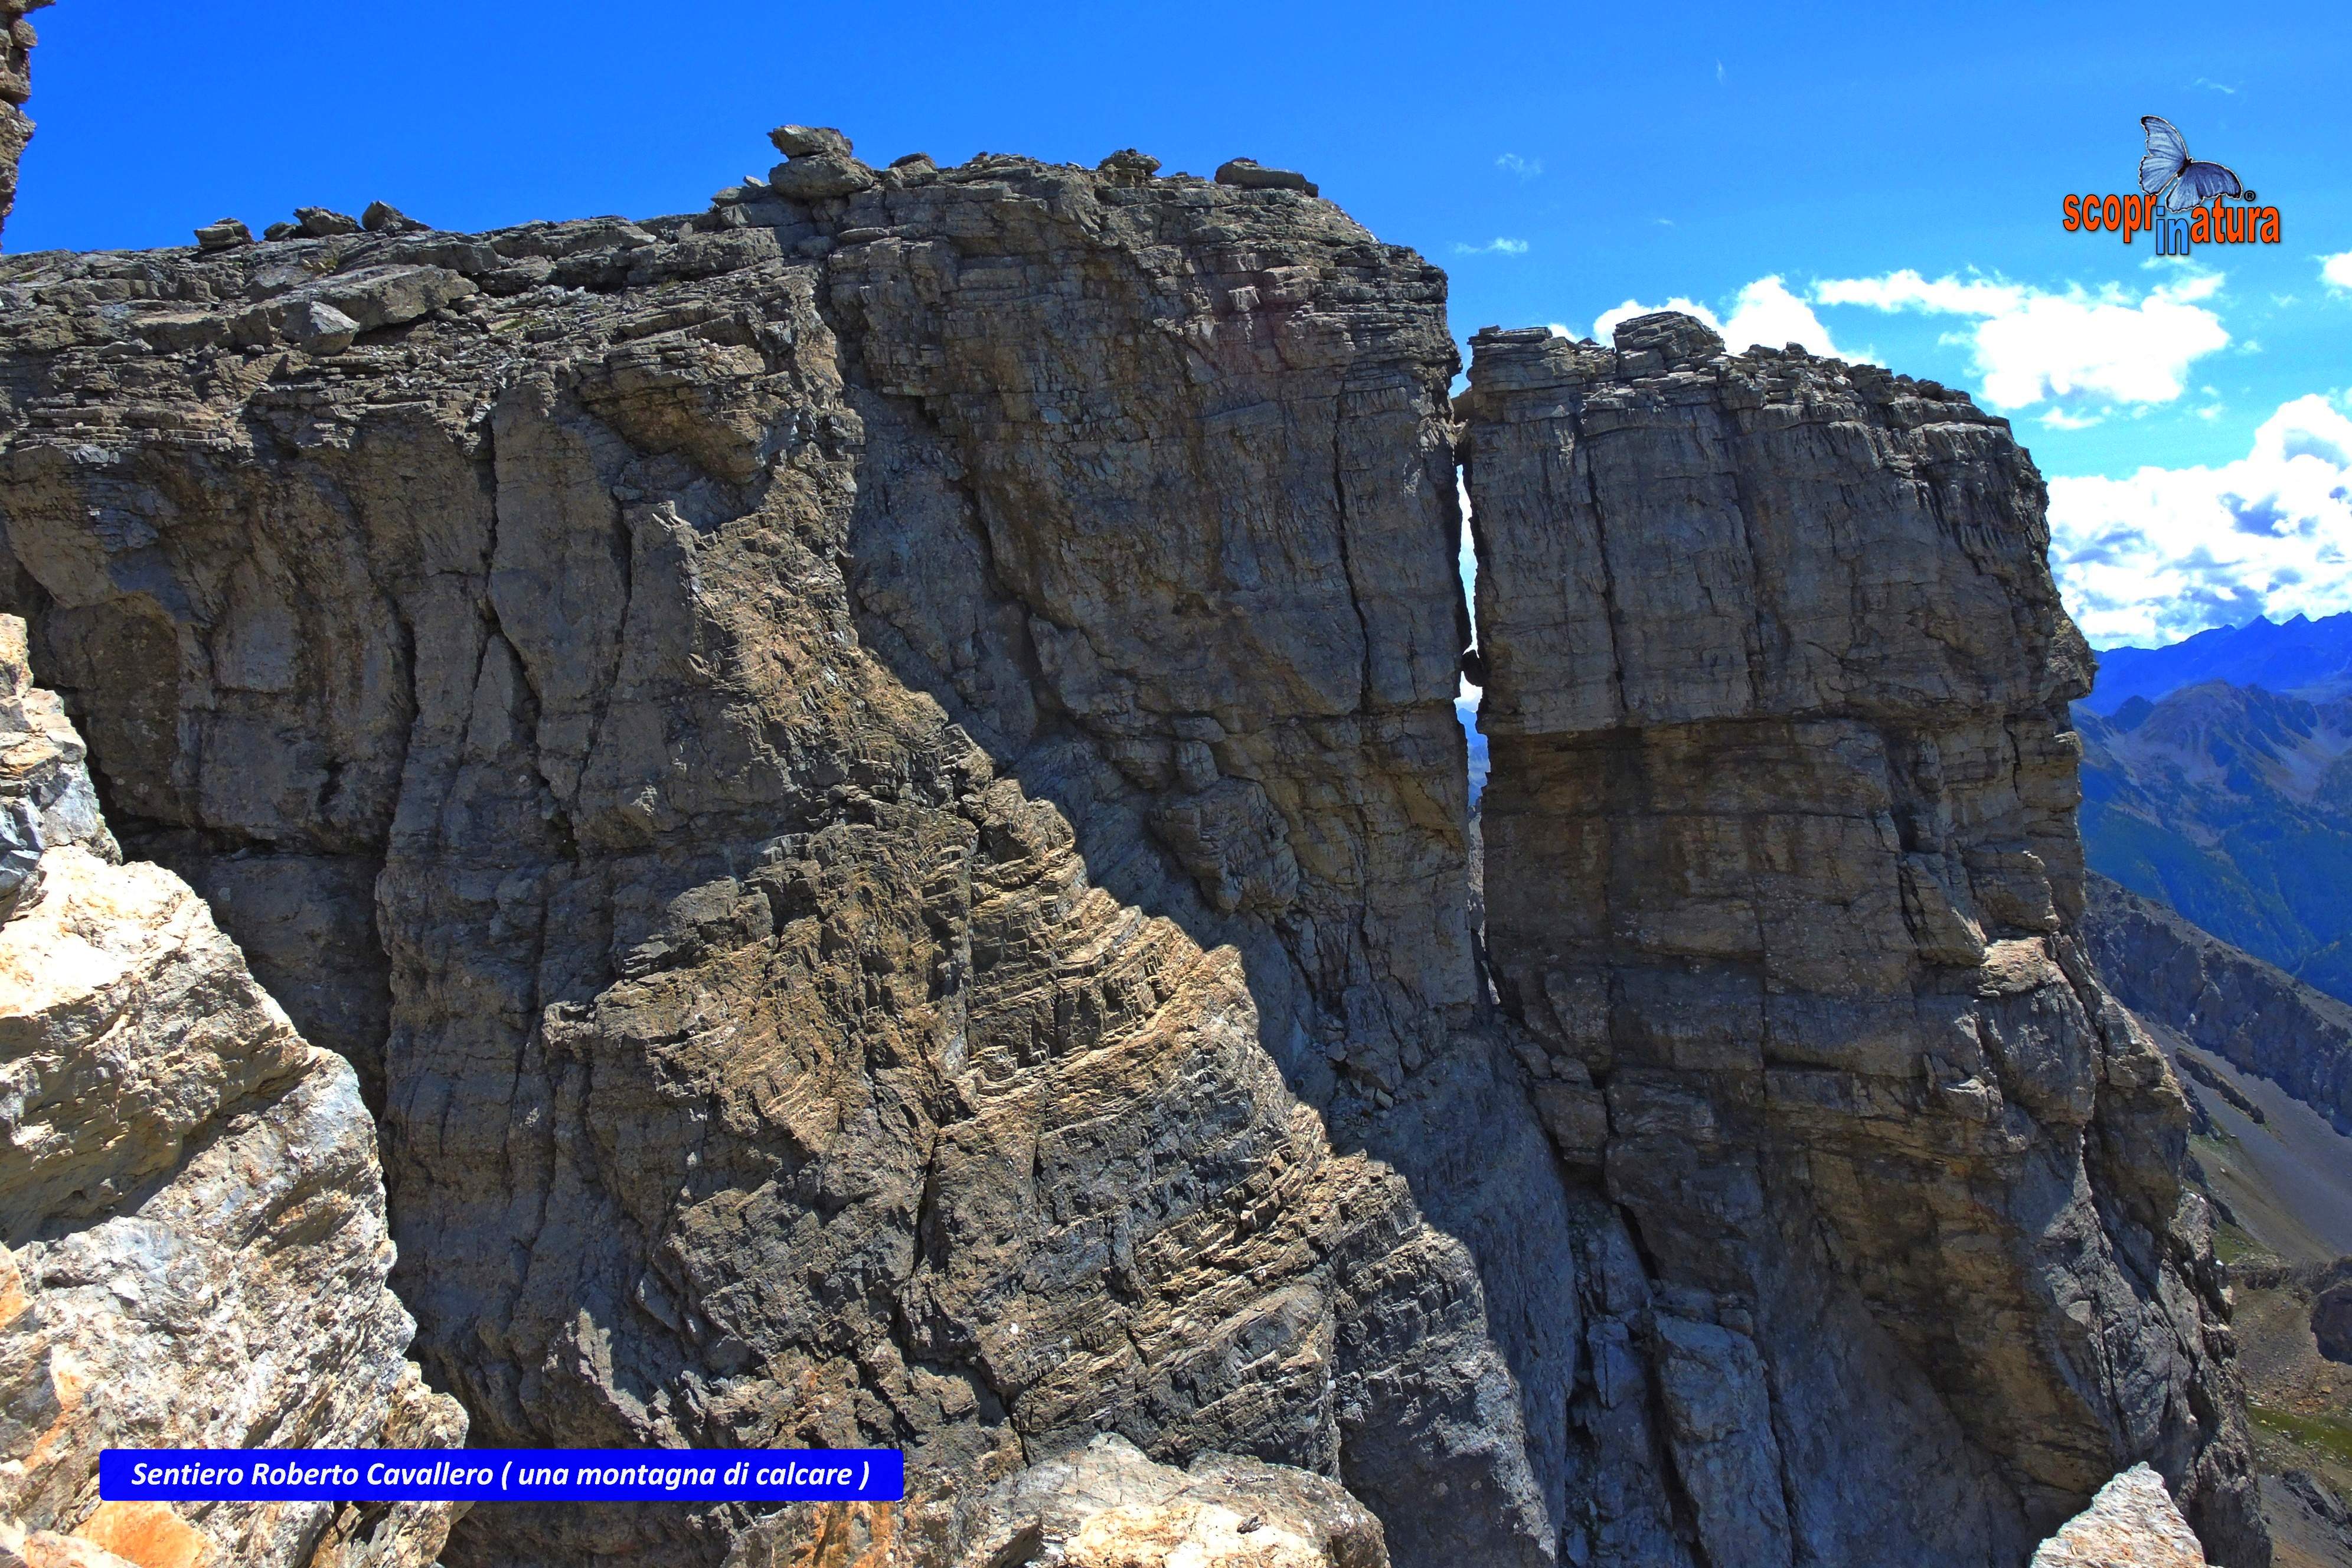 Sentiero Roberto Cavallero - una montagna di calcare